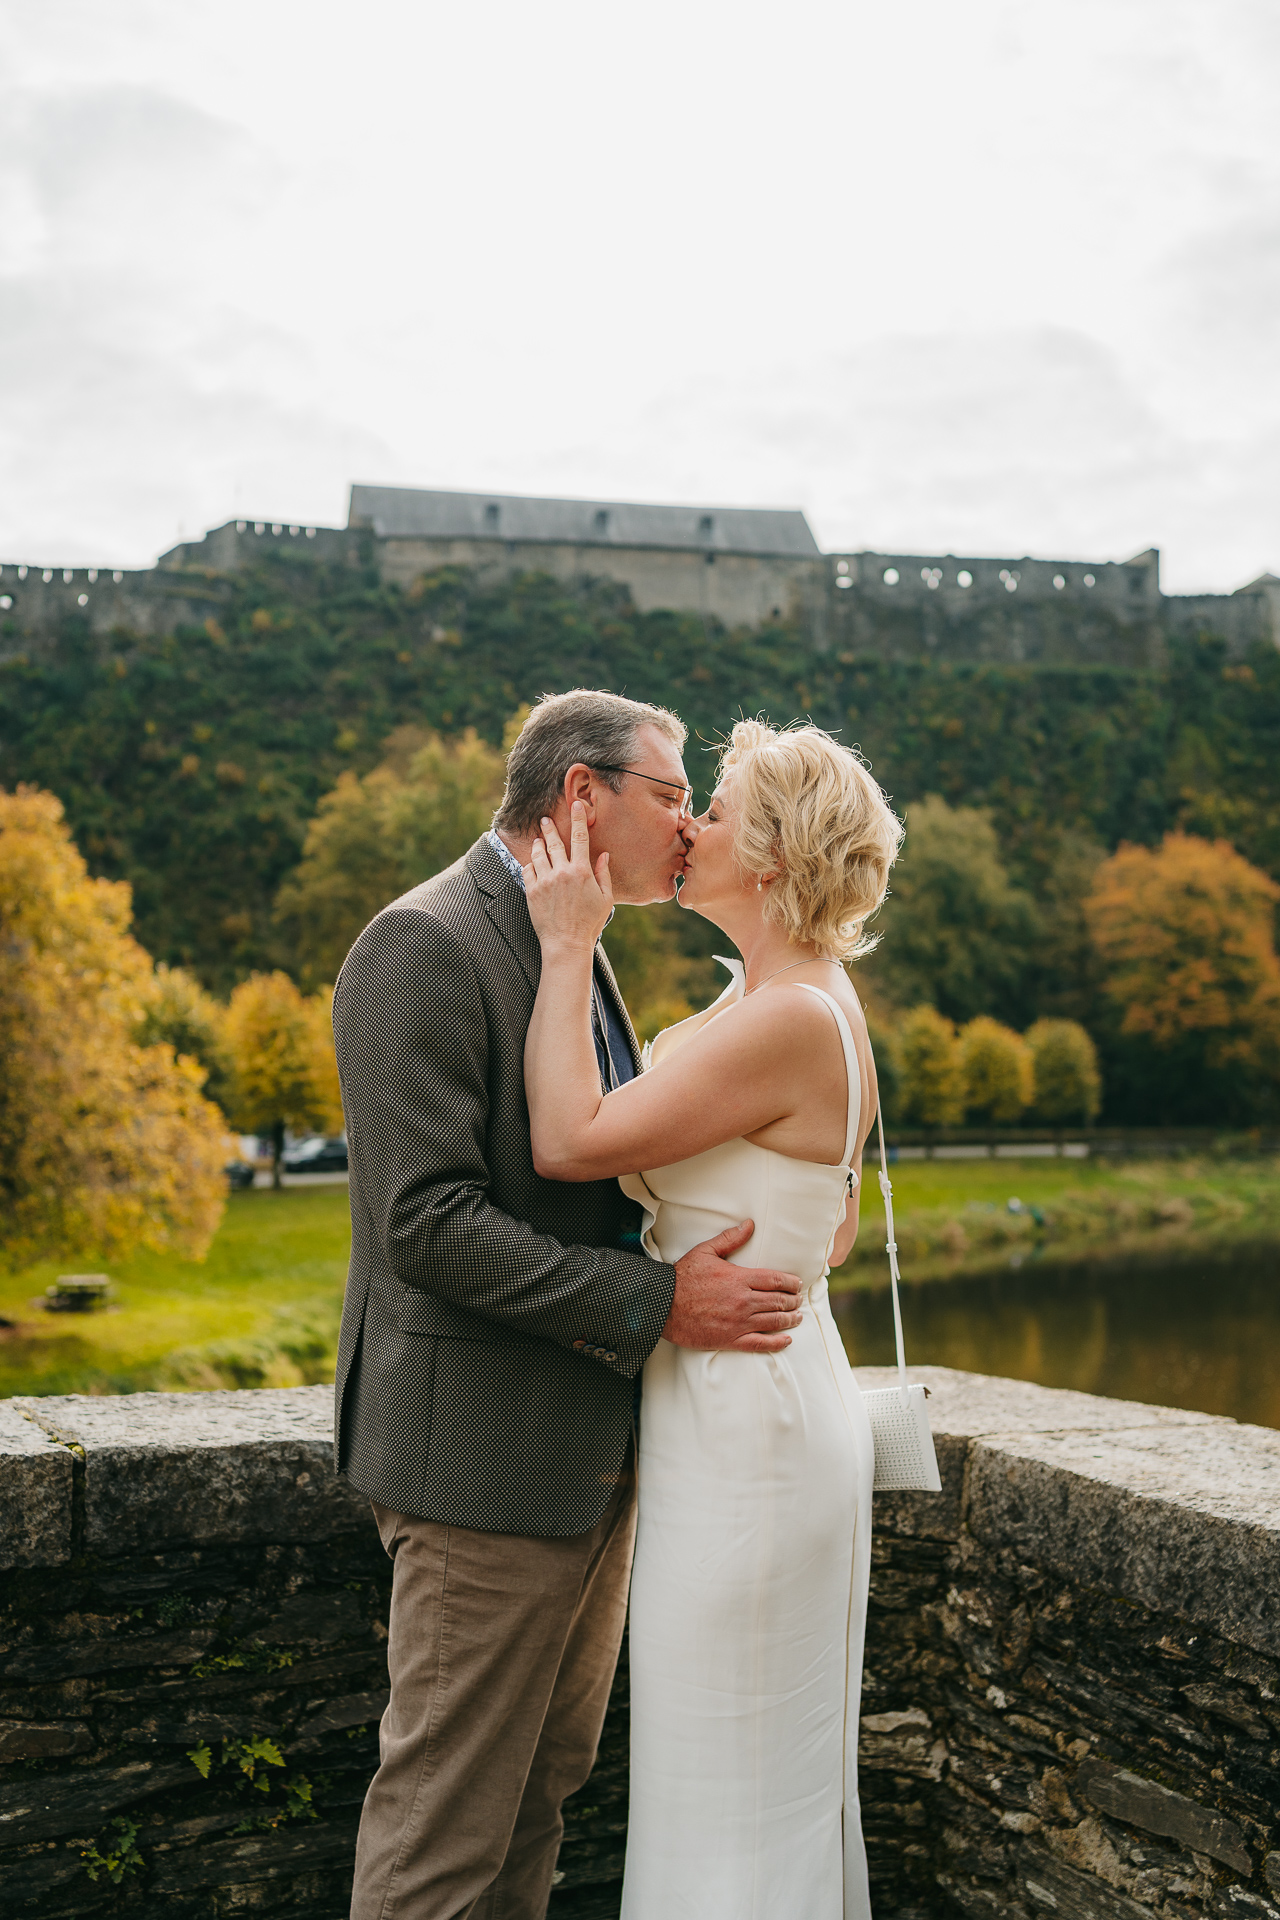 Un couple partageant un baiser sur un pont avec un château historique et des arbres automnaux en arrière-plan.